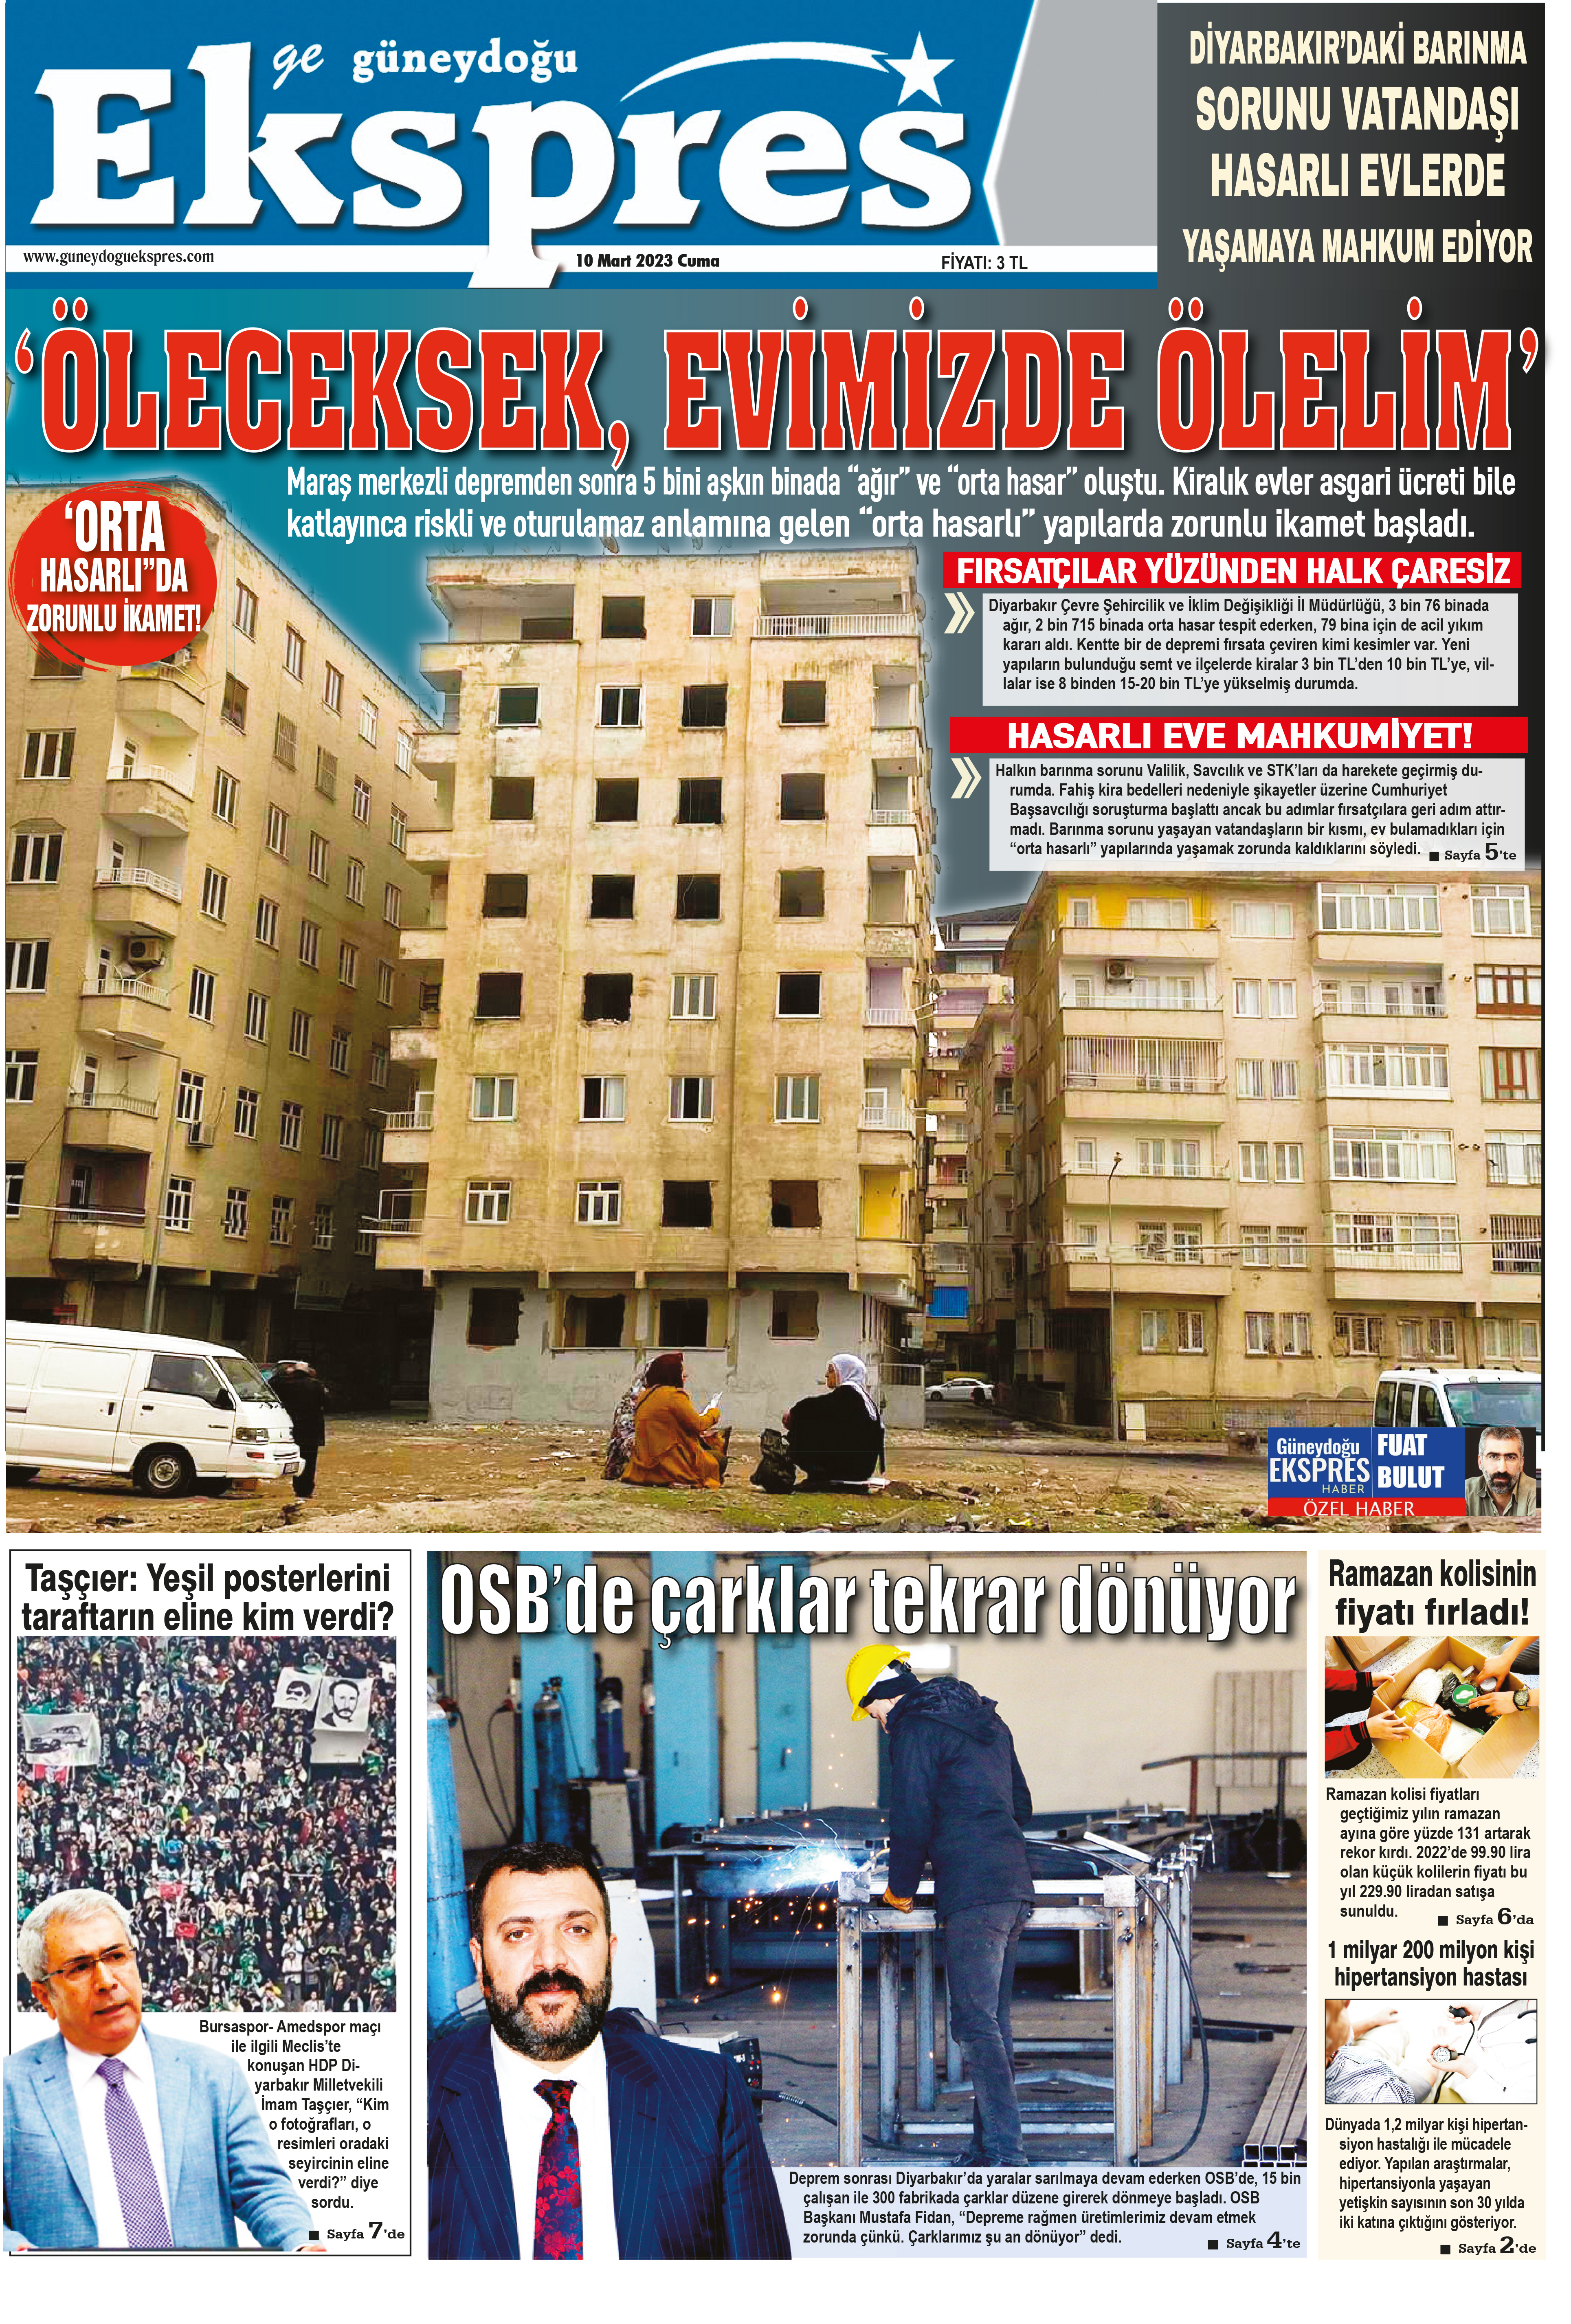 Diyarbakır Güneydoğu Ekspres Haber - 10 Cuma 2023 Cuma Tarihli Manşeti